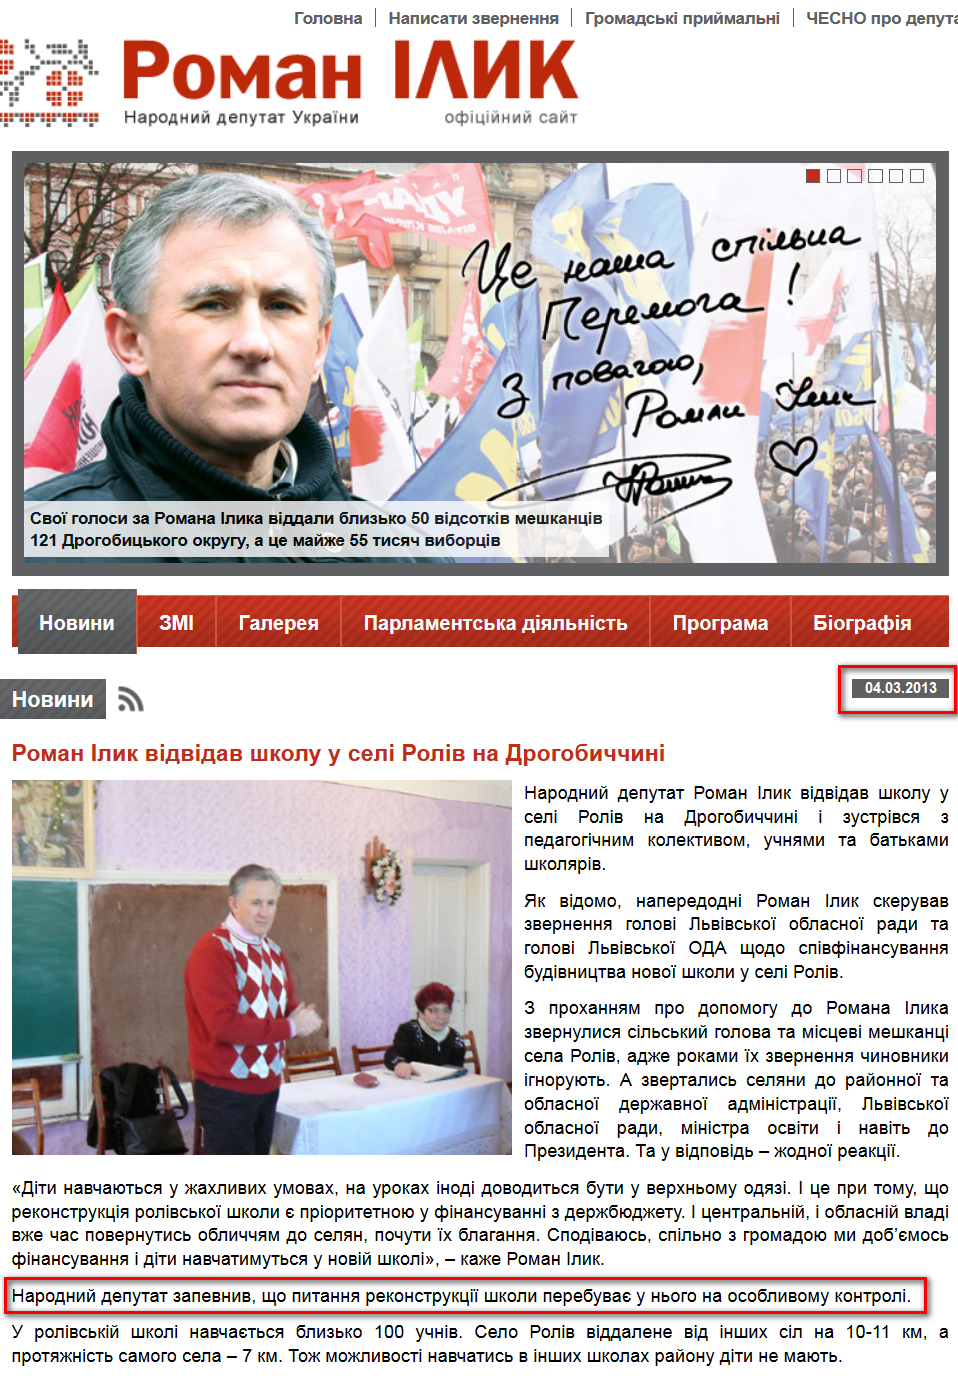 http://romanilyk.com/novunu/2013-03-04-roman-iluk-vidvidav-shkolu-u-seli-roliv-na-drogobuchchuni/